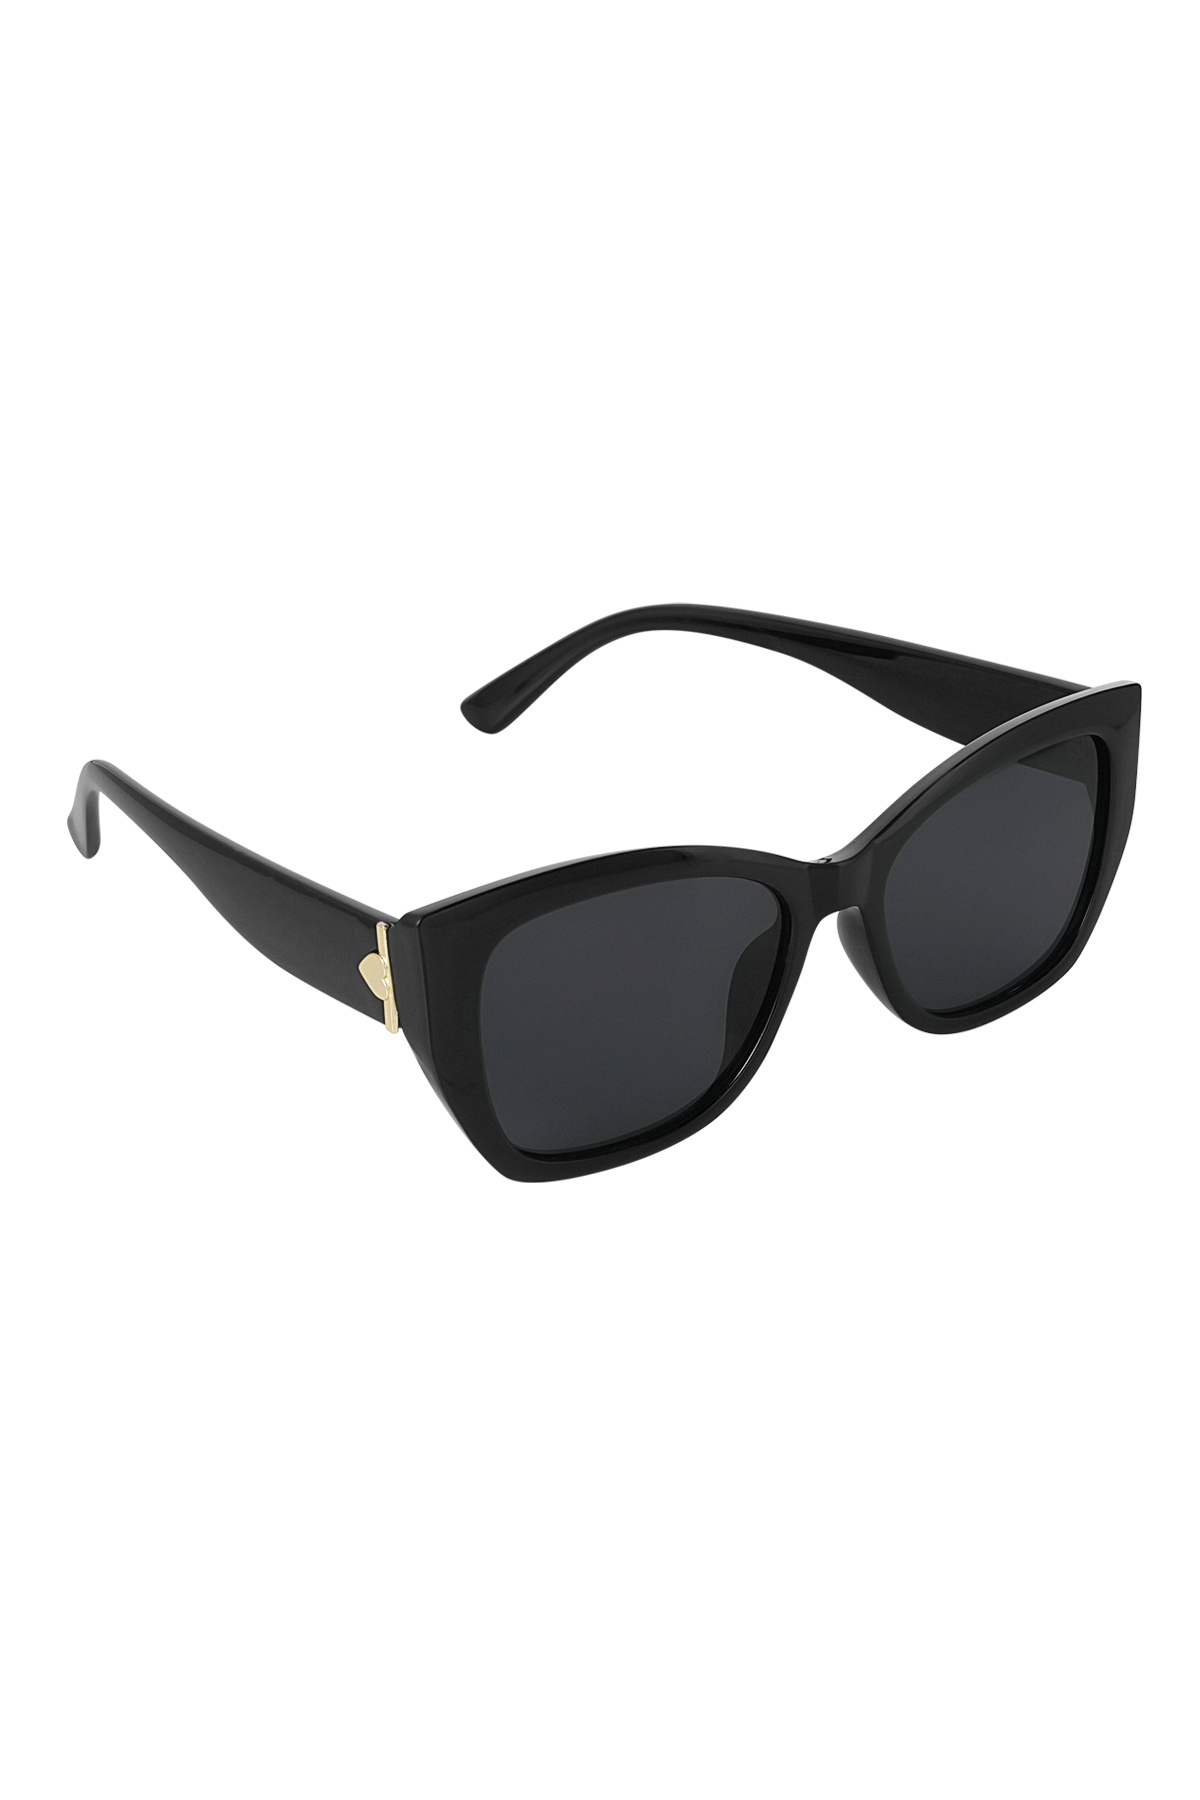 Basic sunglasses - black PC One size